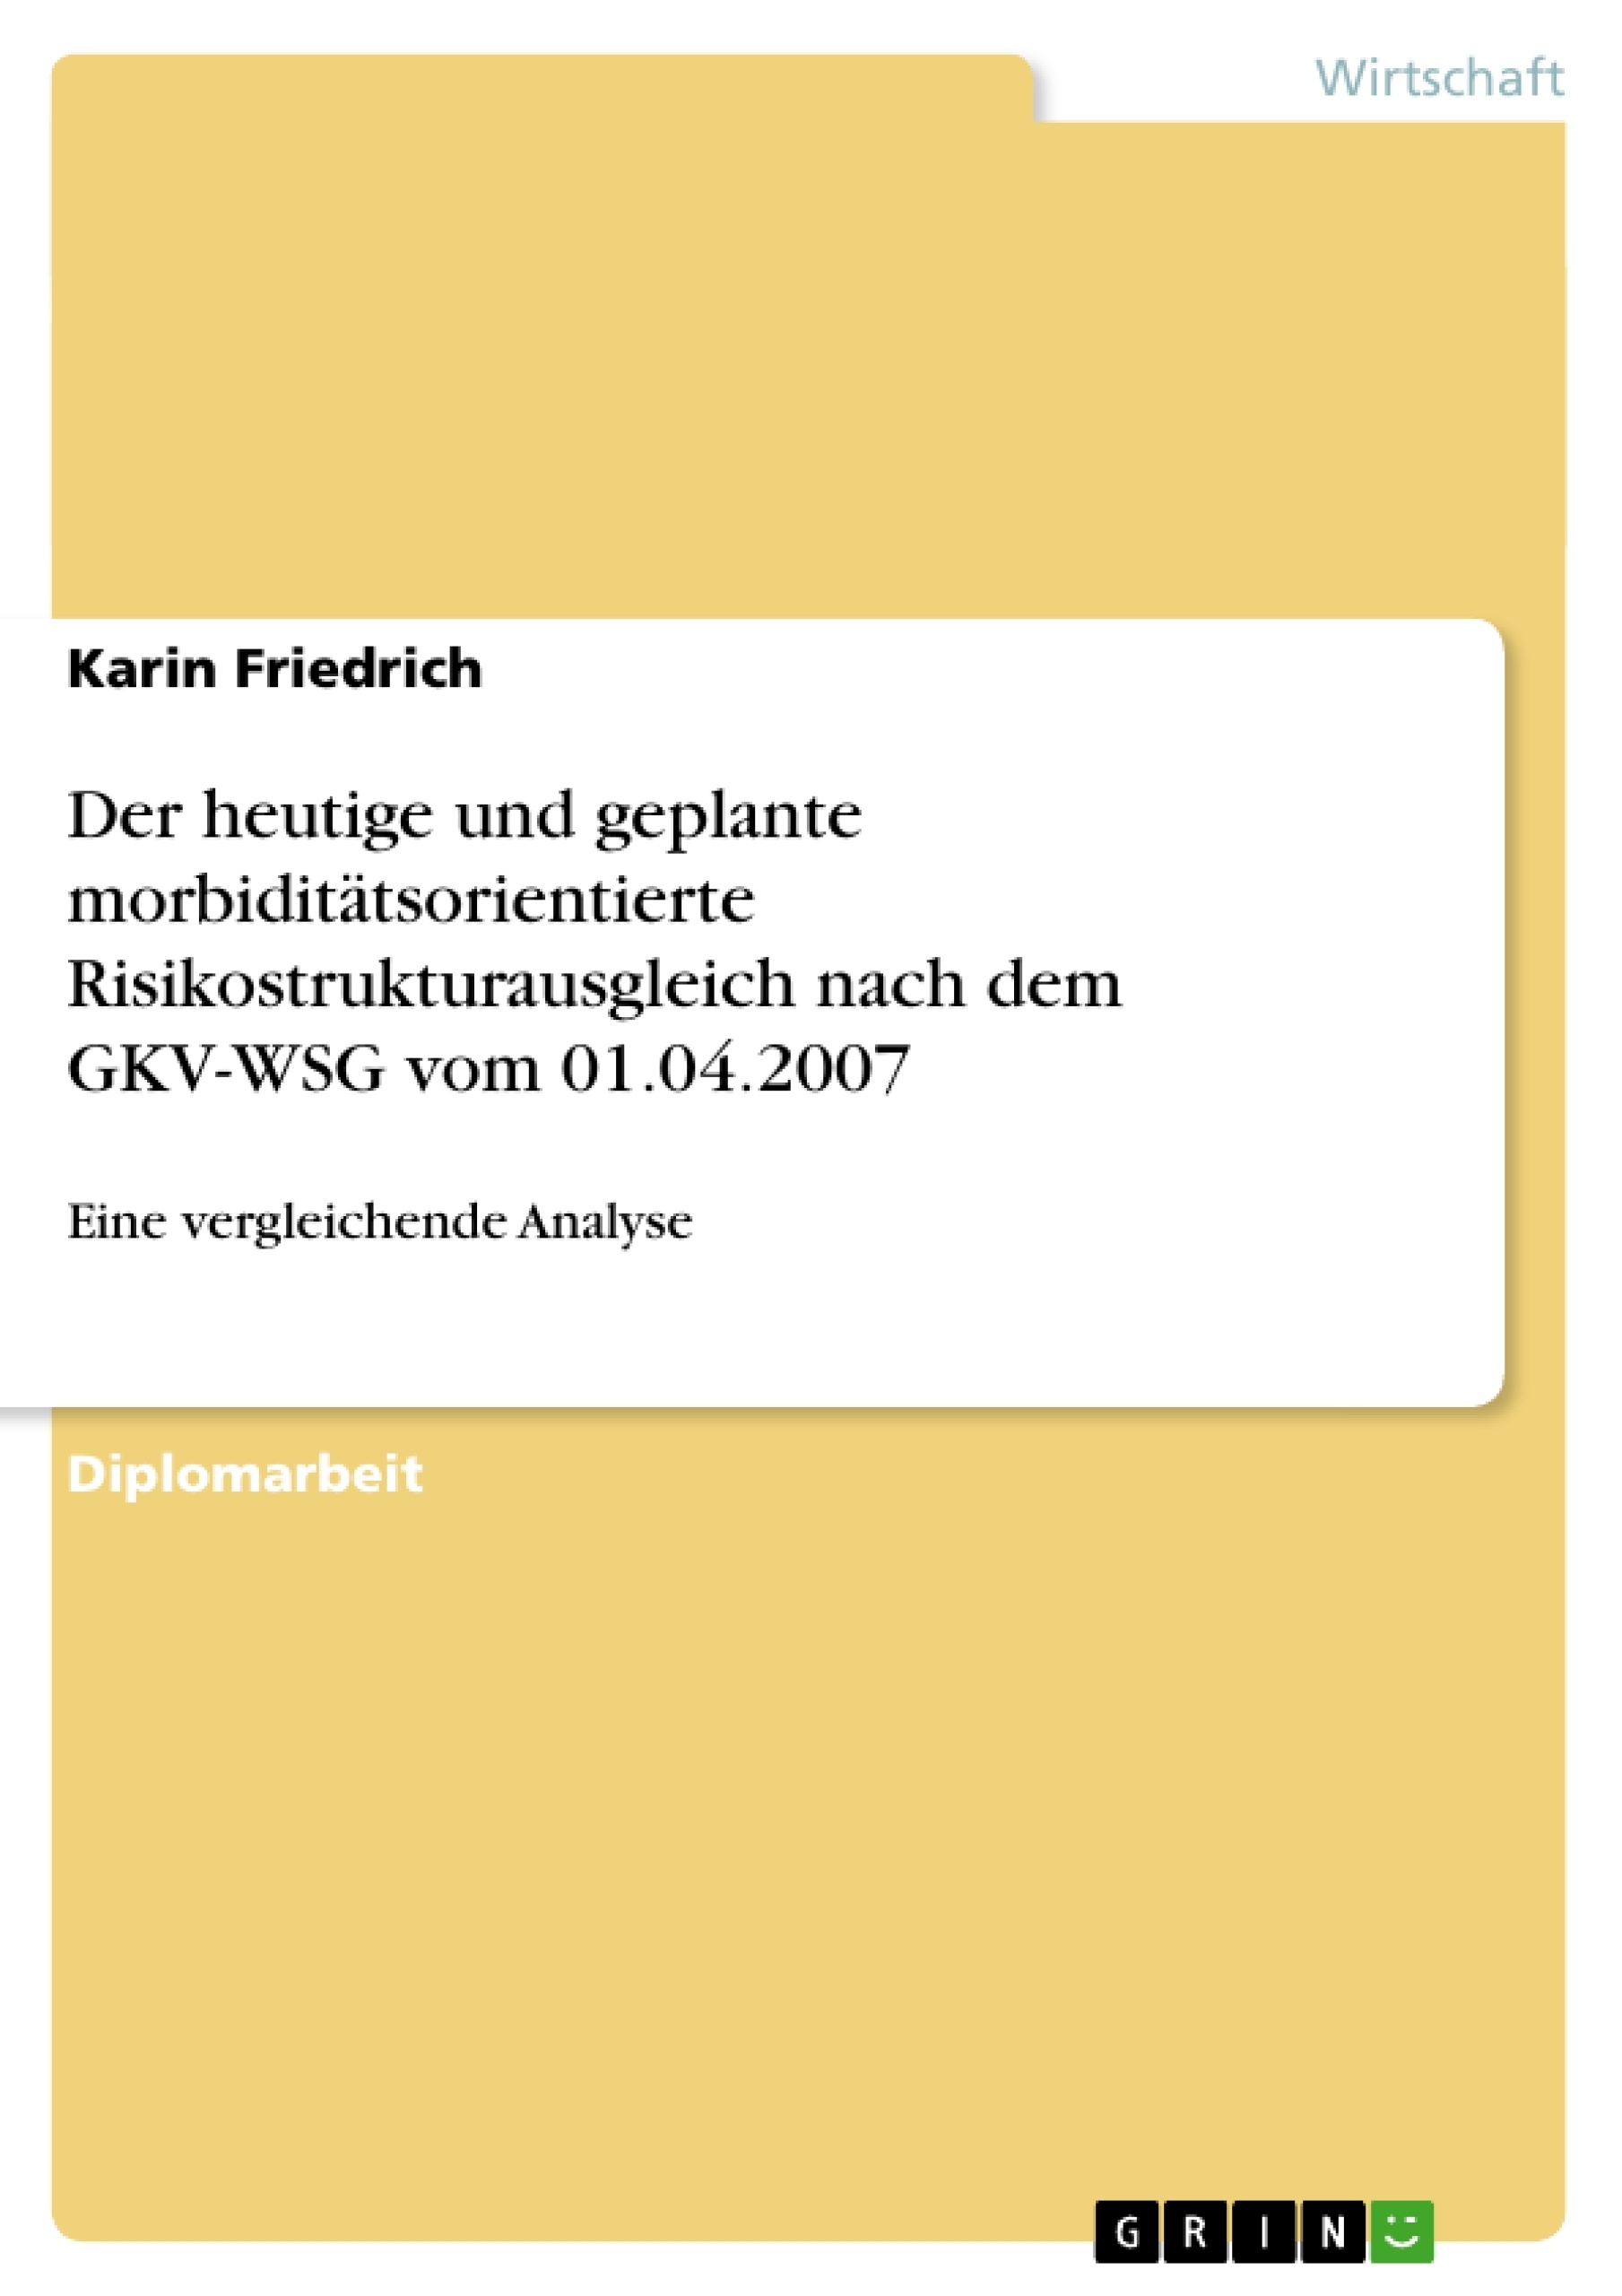 Titel: Der heutige und geplante morbiditätsorientierte Risikostrukturausgleich nach dem GKV-WSG vom 01.04.2007